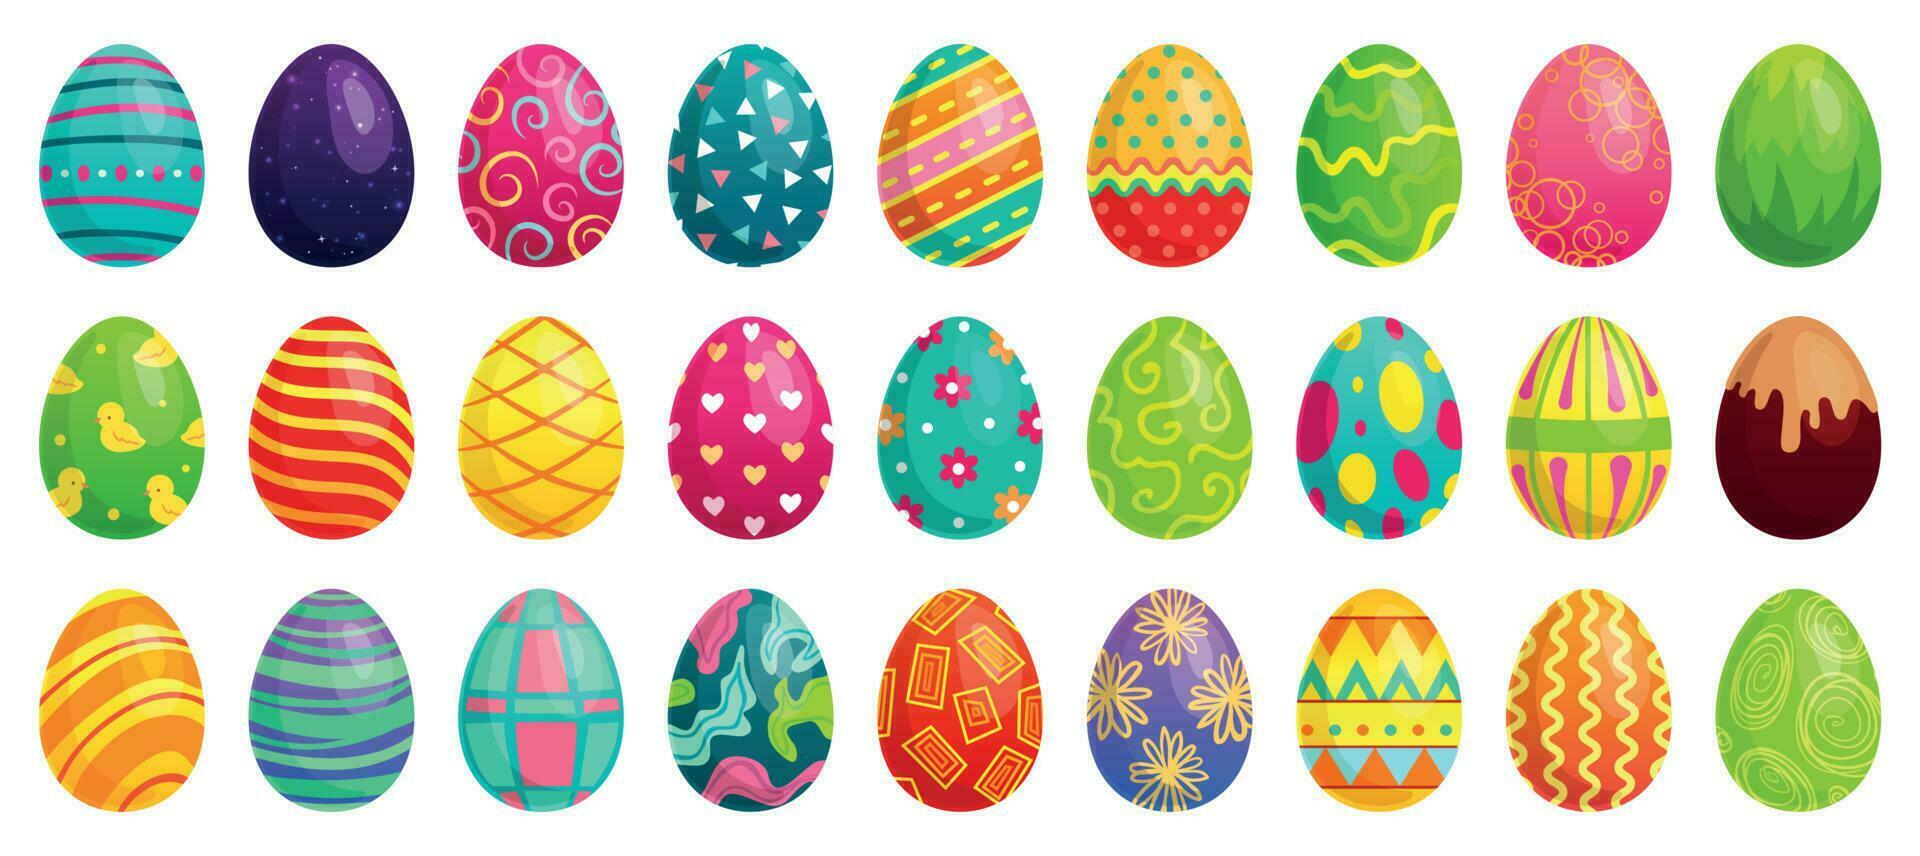 Pascua de Resurrección huevos. primavera vistoso chocolate huevo, linda de colores patrones y contento Pascua de Resurrección decoración dibujos animados vector conjunto